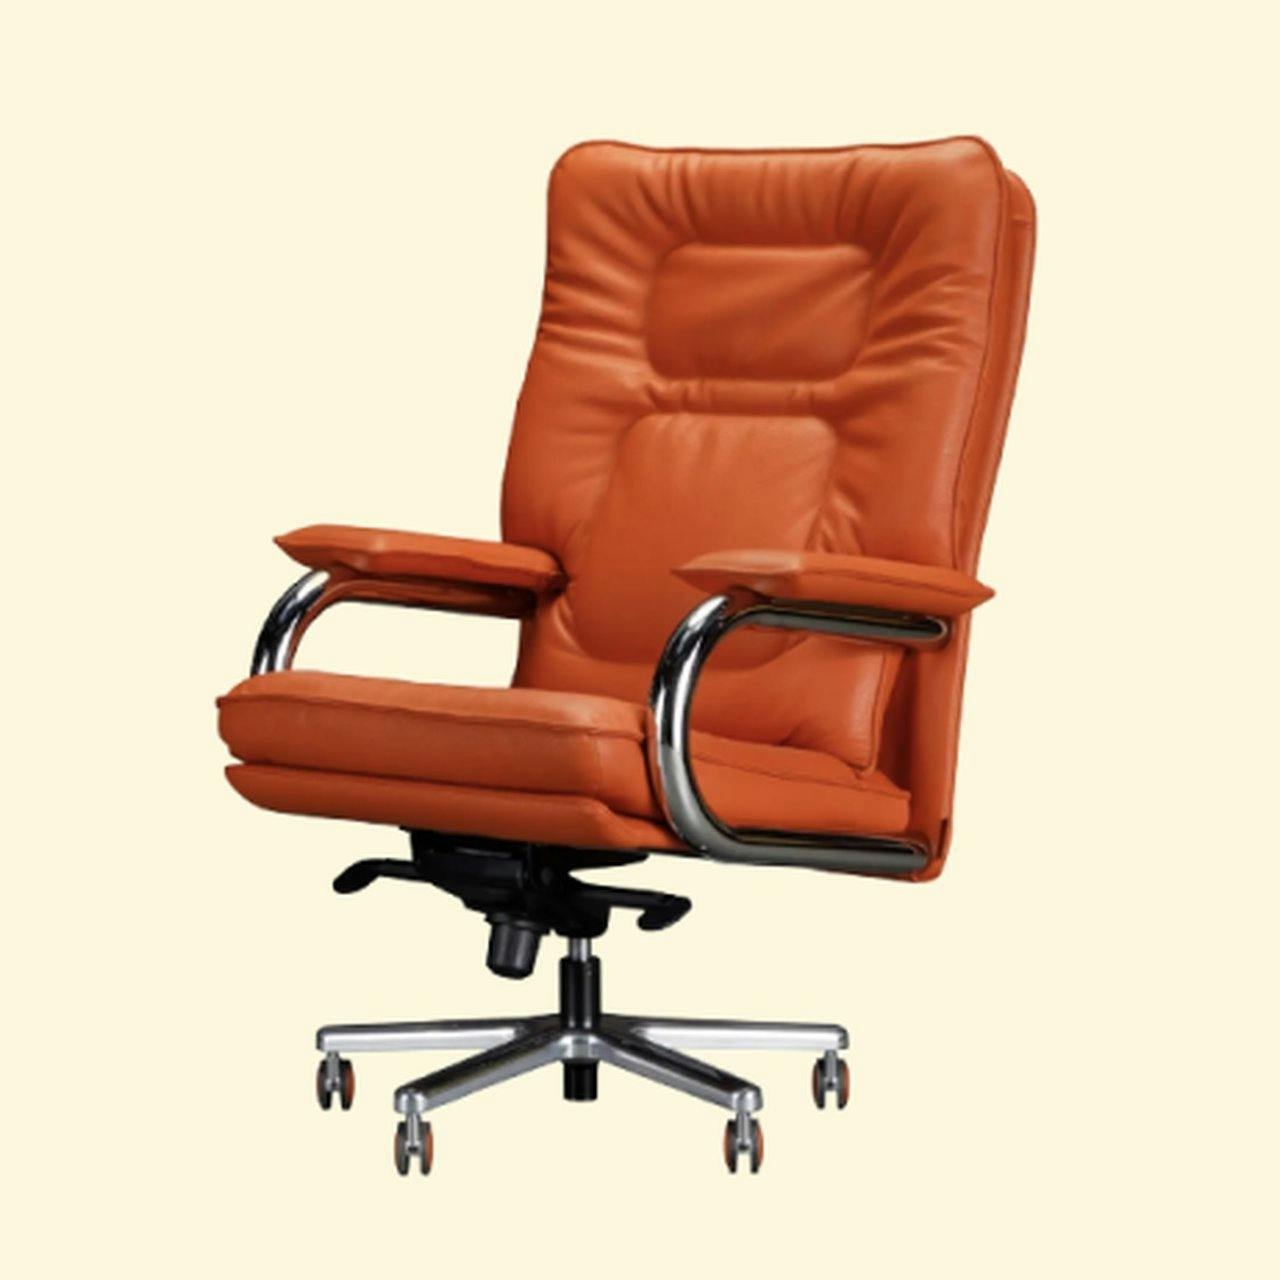 Giroflex Office chairs